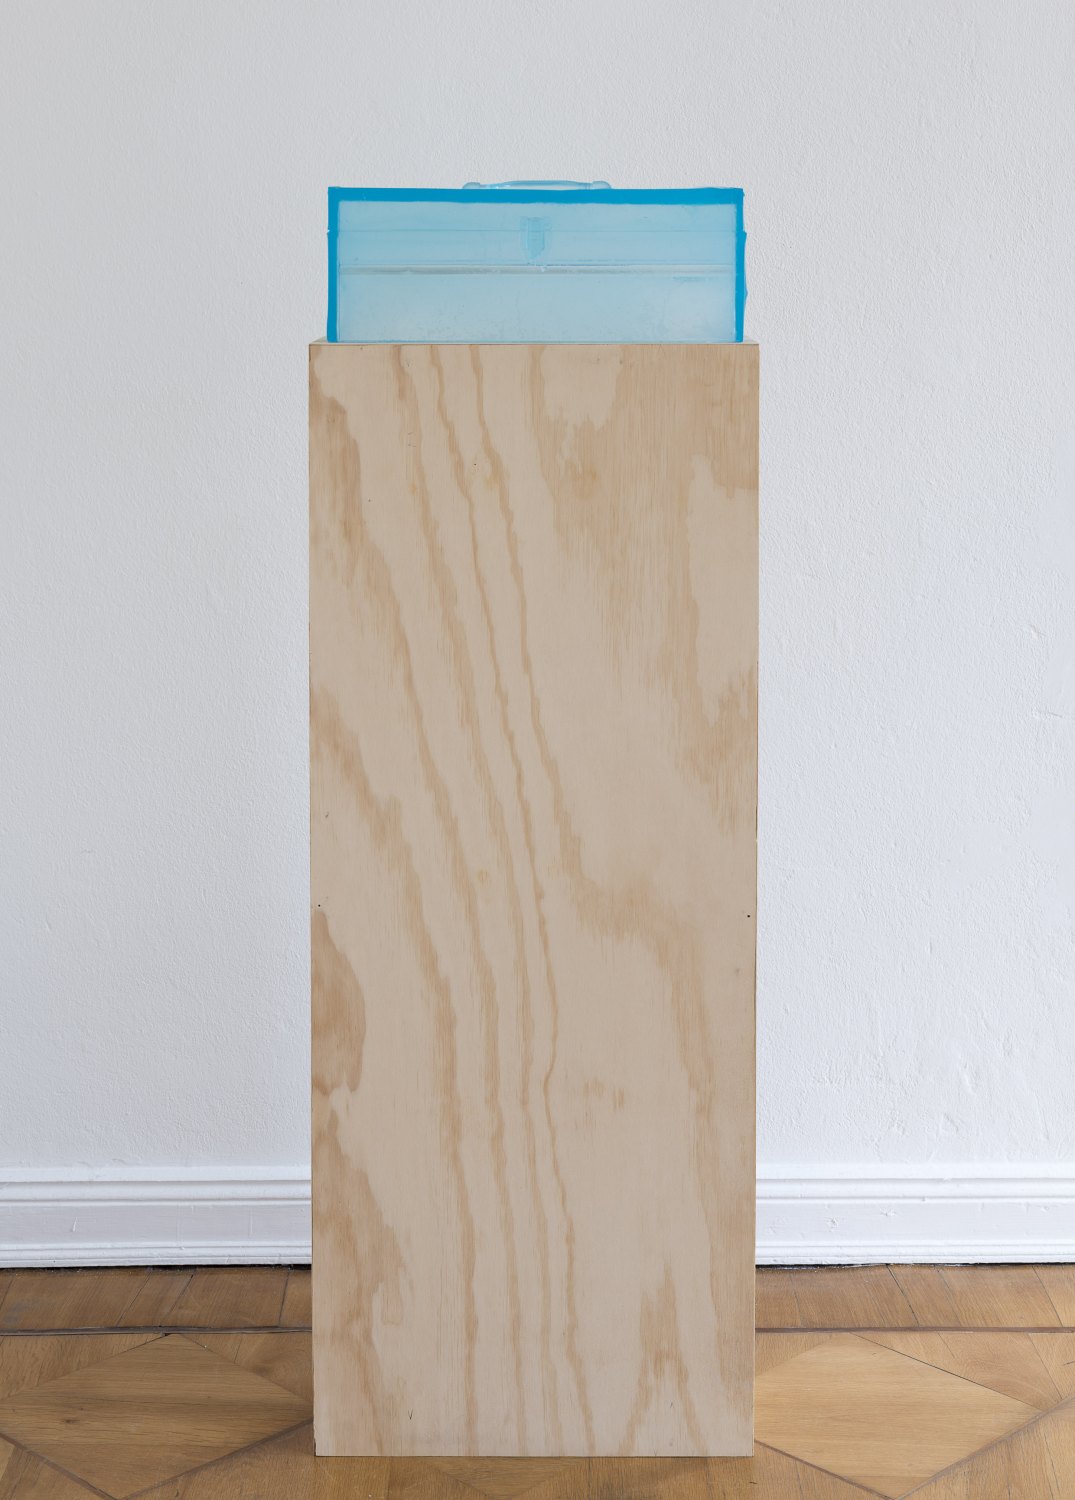 Alex Hubbard Studio 4, 2014 Urethane and MDF, box: 20 × 48.3 × 18 cm, plinth: 132 × 52 × 21 cm  